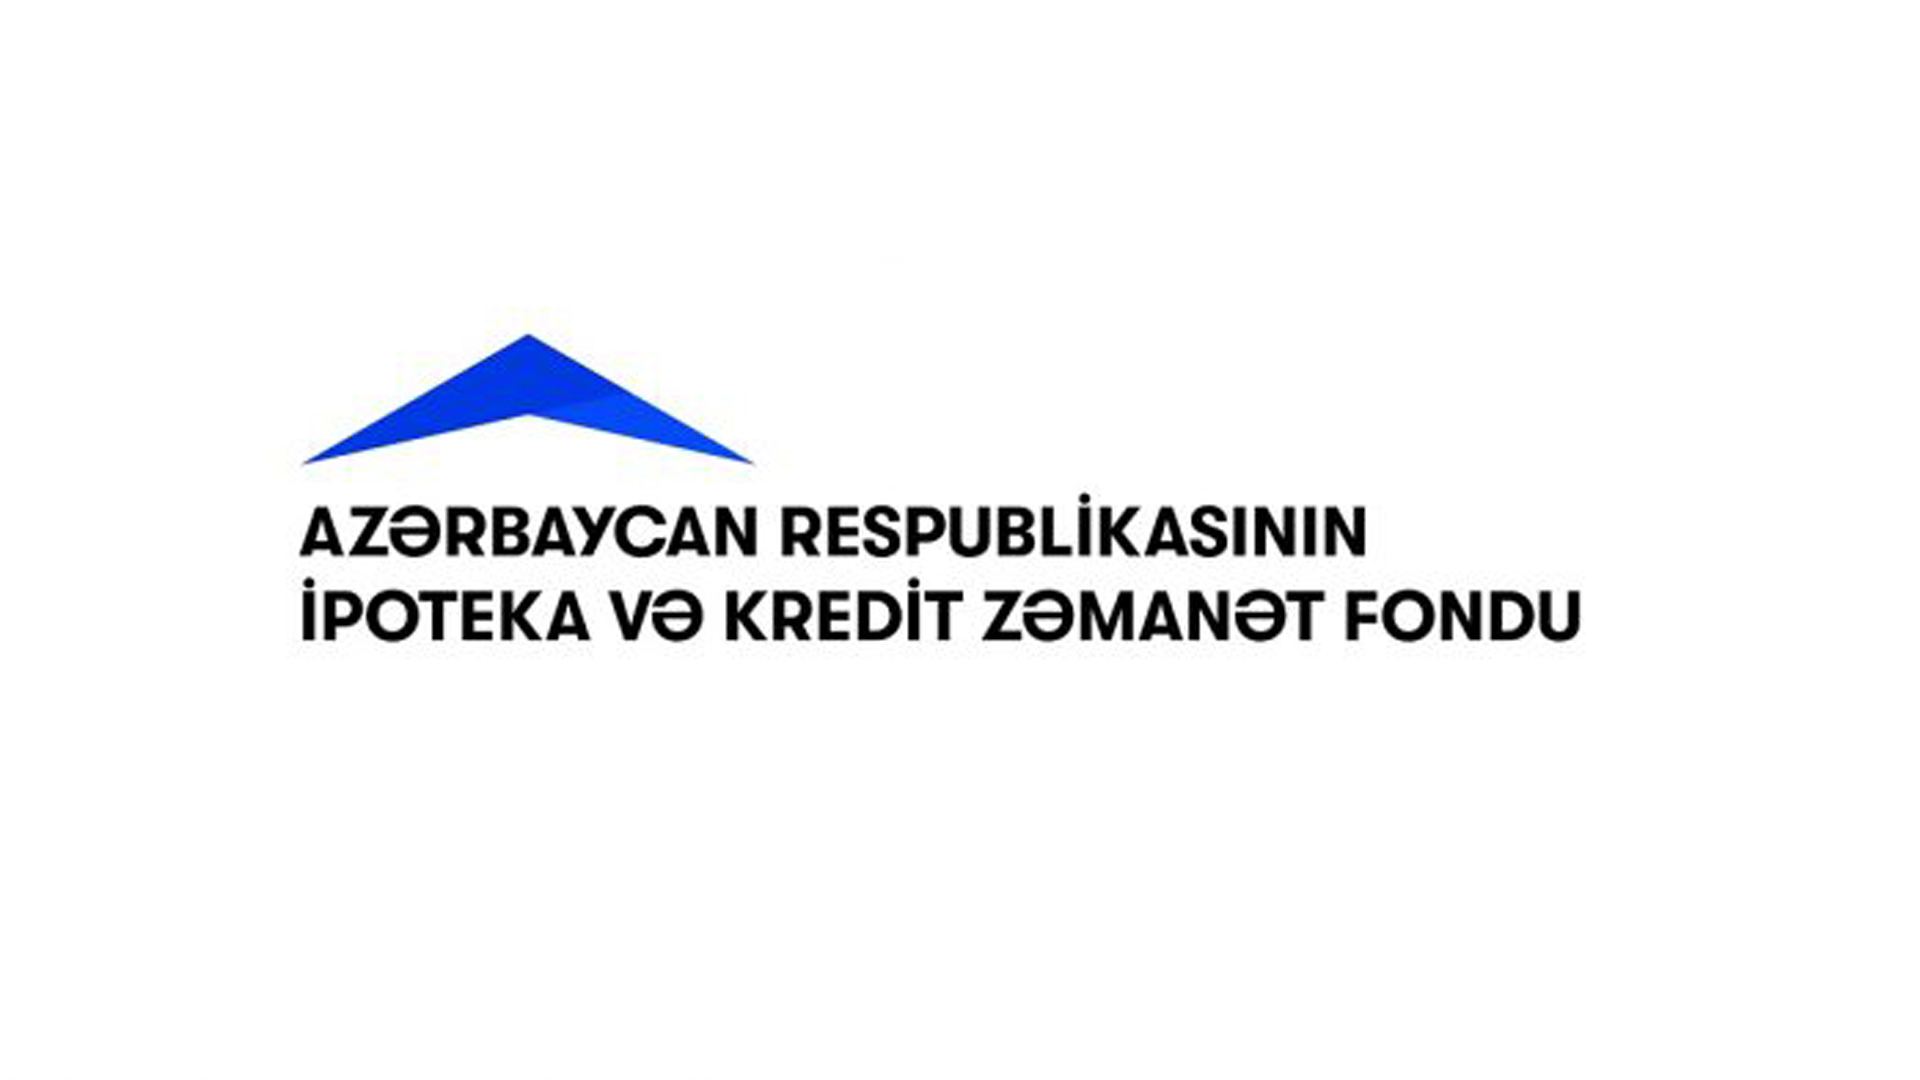 Ипотечный и кредитно-гарантийный фонд Азербайджана переведет средства в Фонд поддержки борьбы с коронавирусом